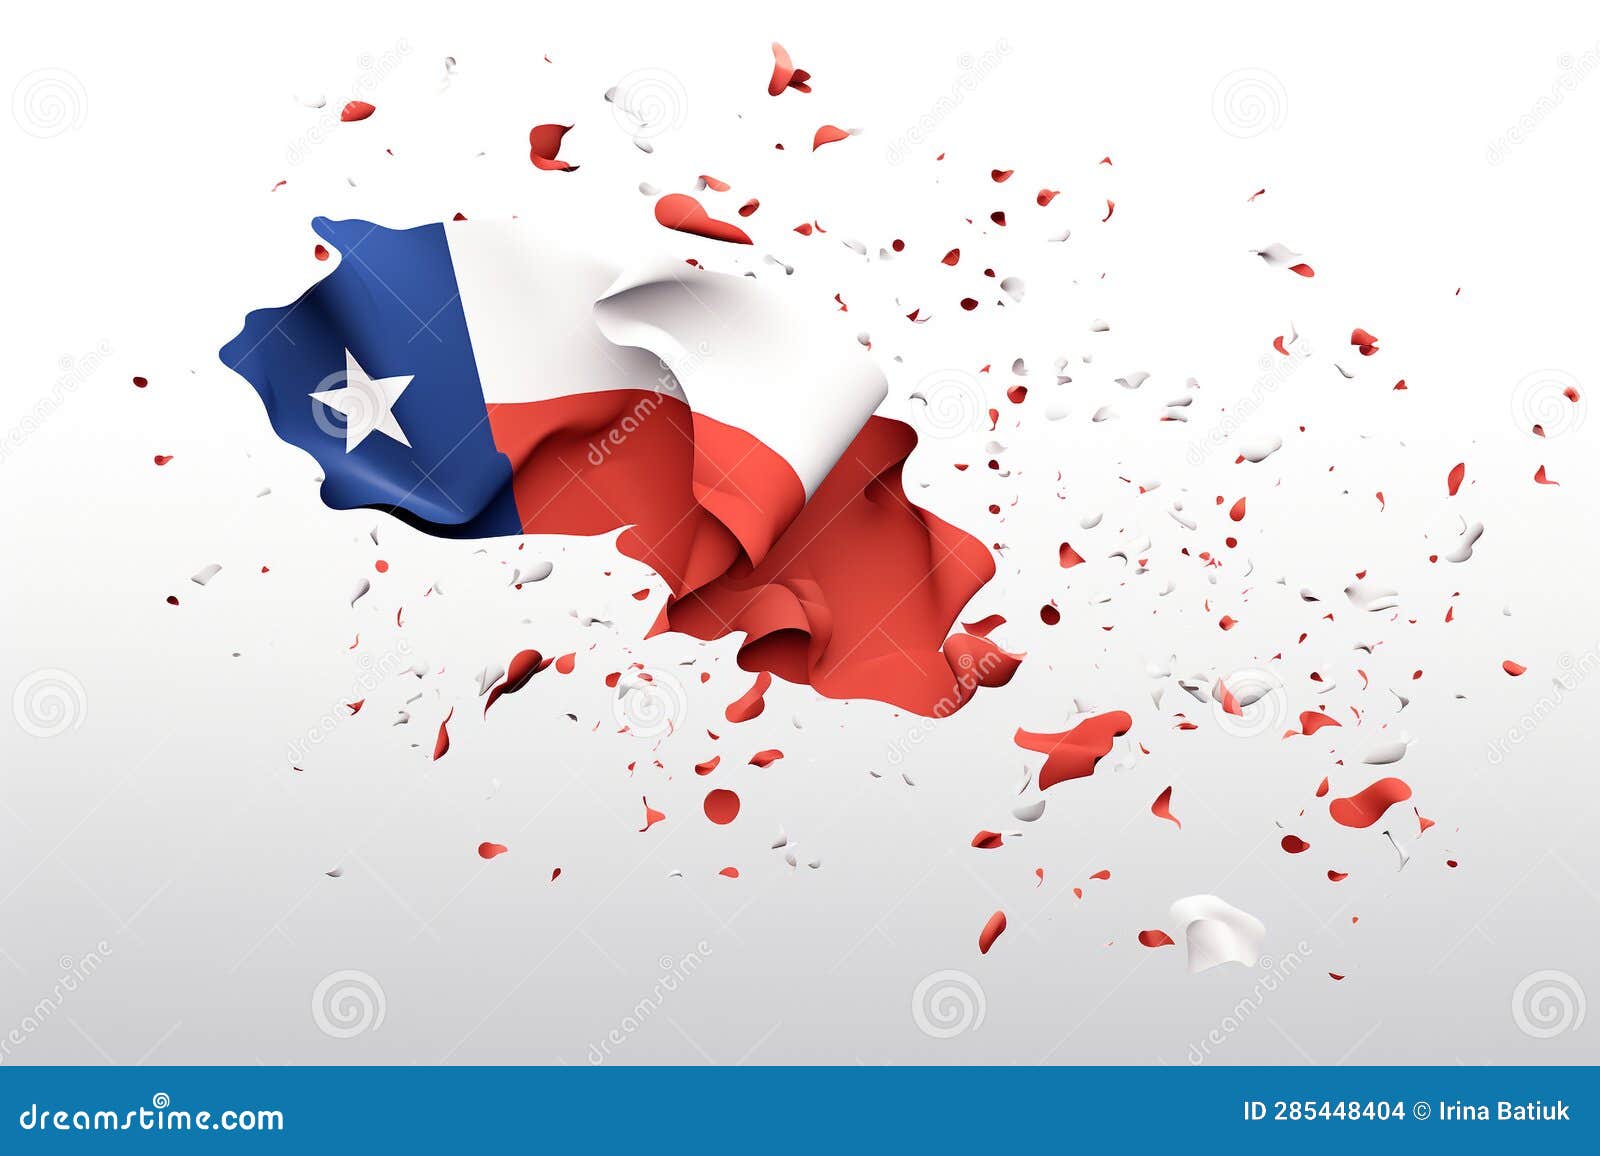 fiestas patrias de chile. freedom from spanish rule, september 18. conmemoracion de la independencia nacional de chile